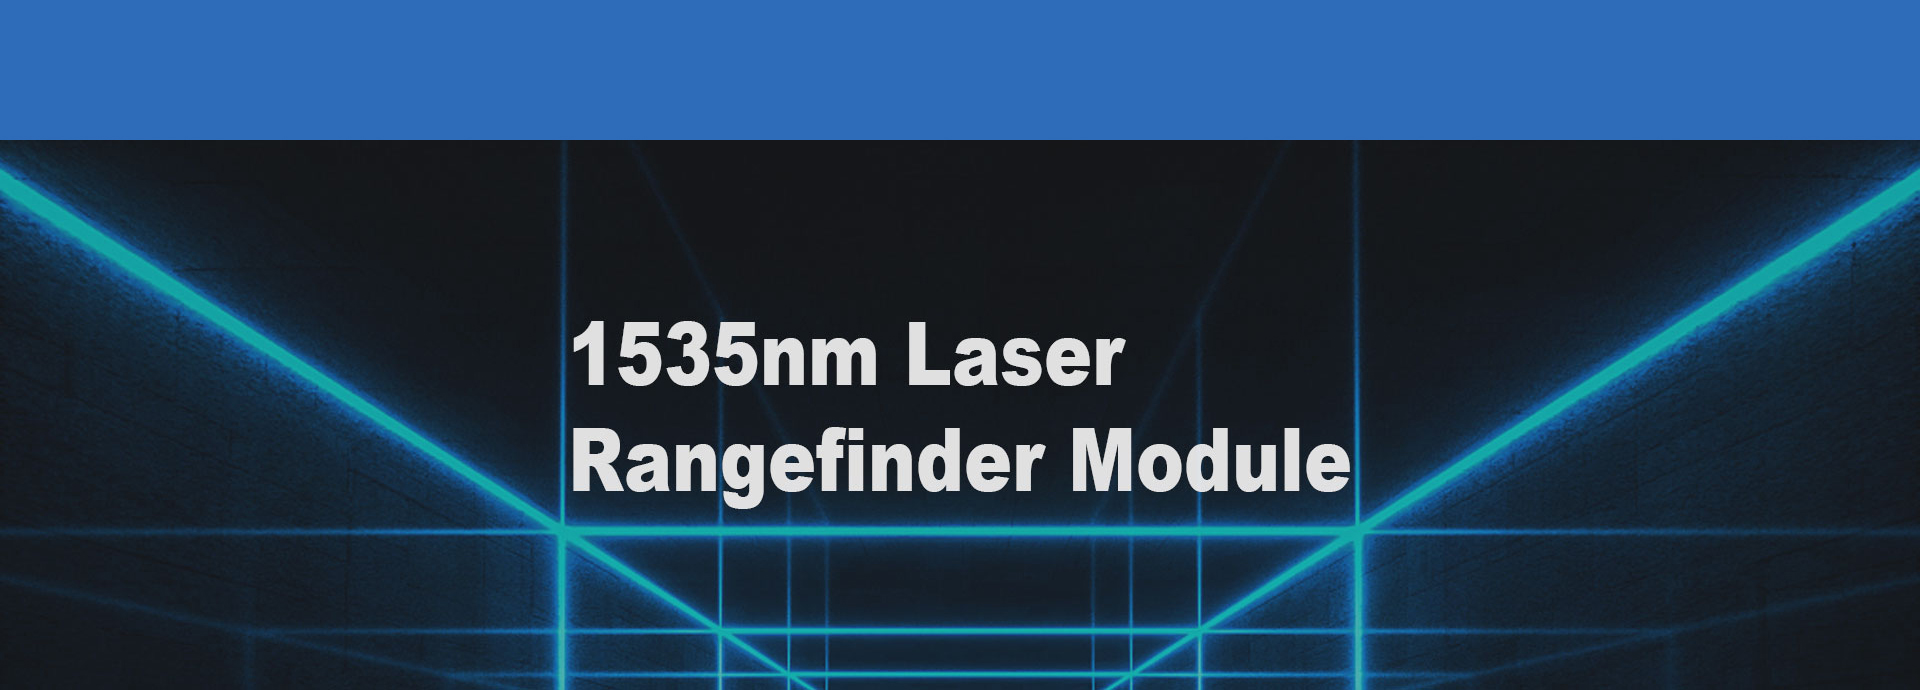 15km Range Finder Module